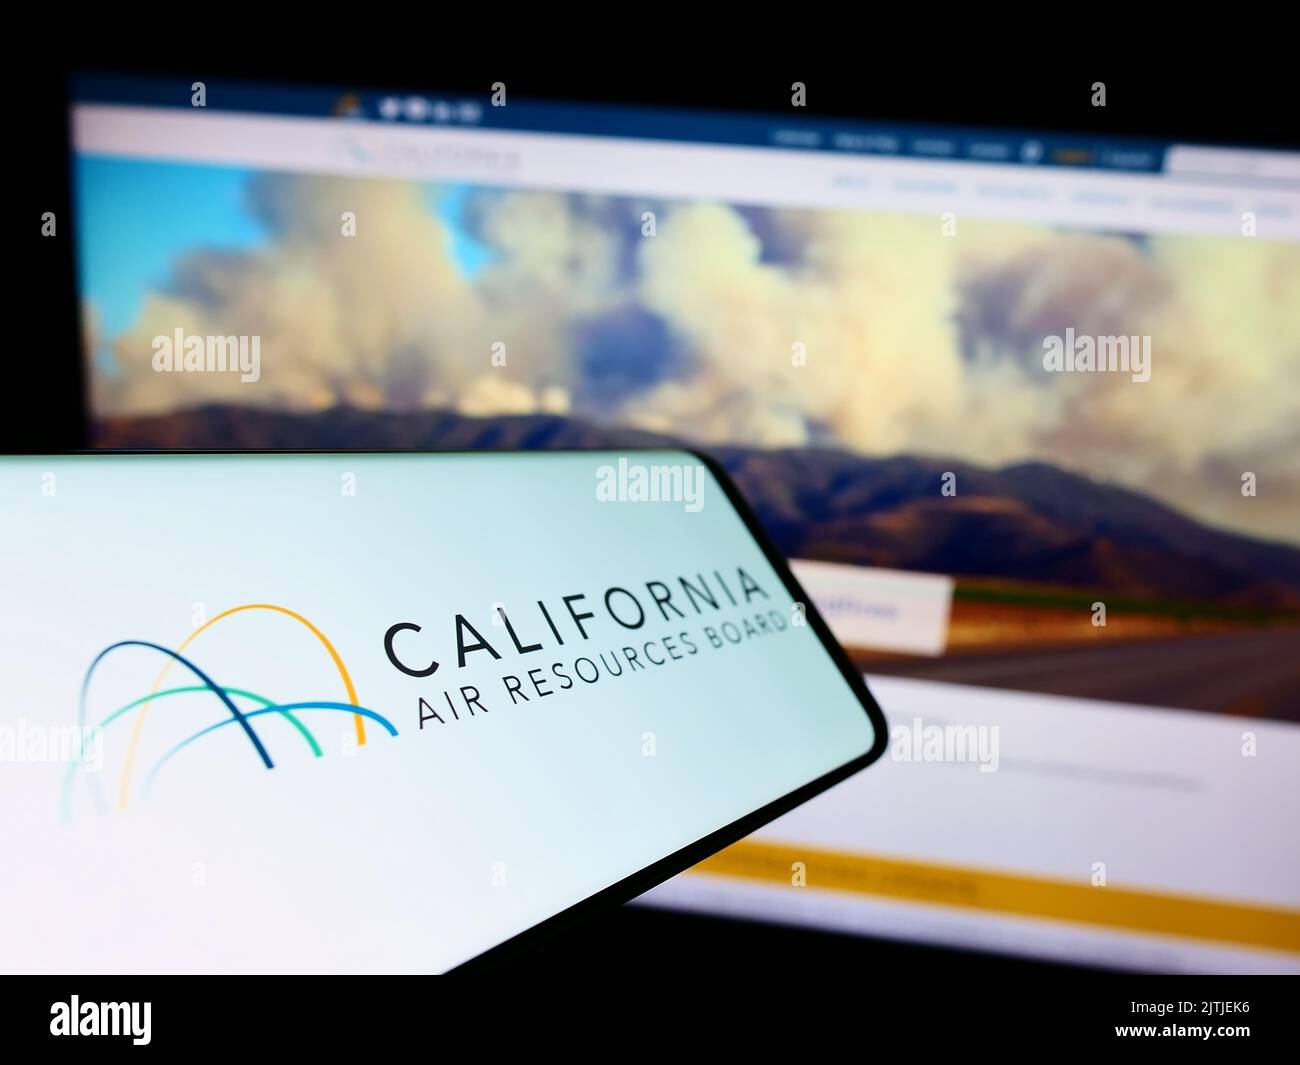 Telefono cellulare con il logo del California Air Resources Board (CARB) sullo schermo di fronte al sito web. Messa a fuoco al centro del display del telefono. Foto Stock